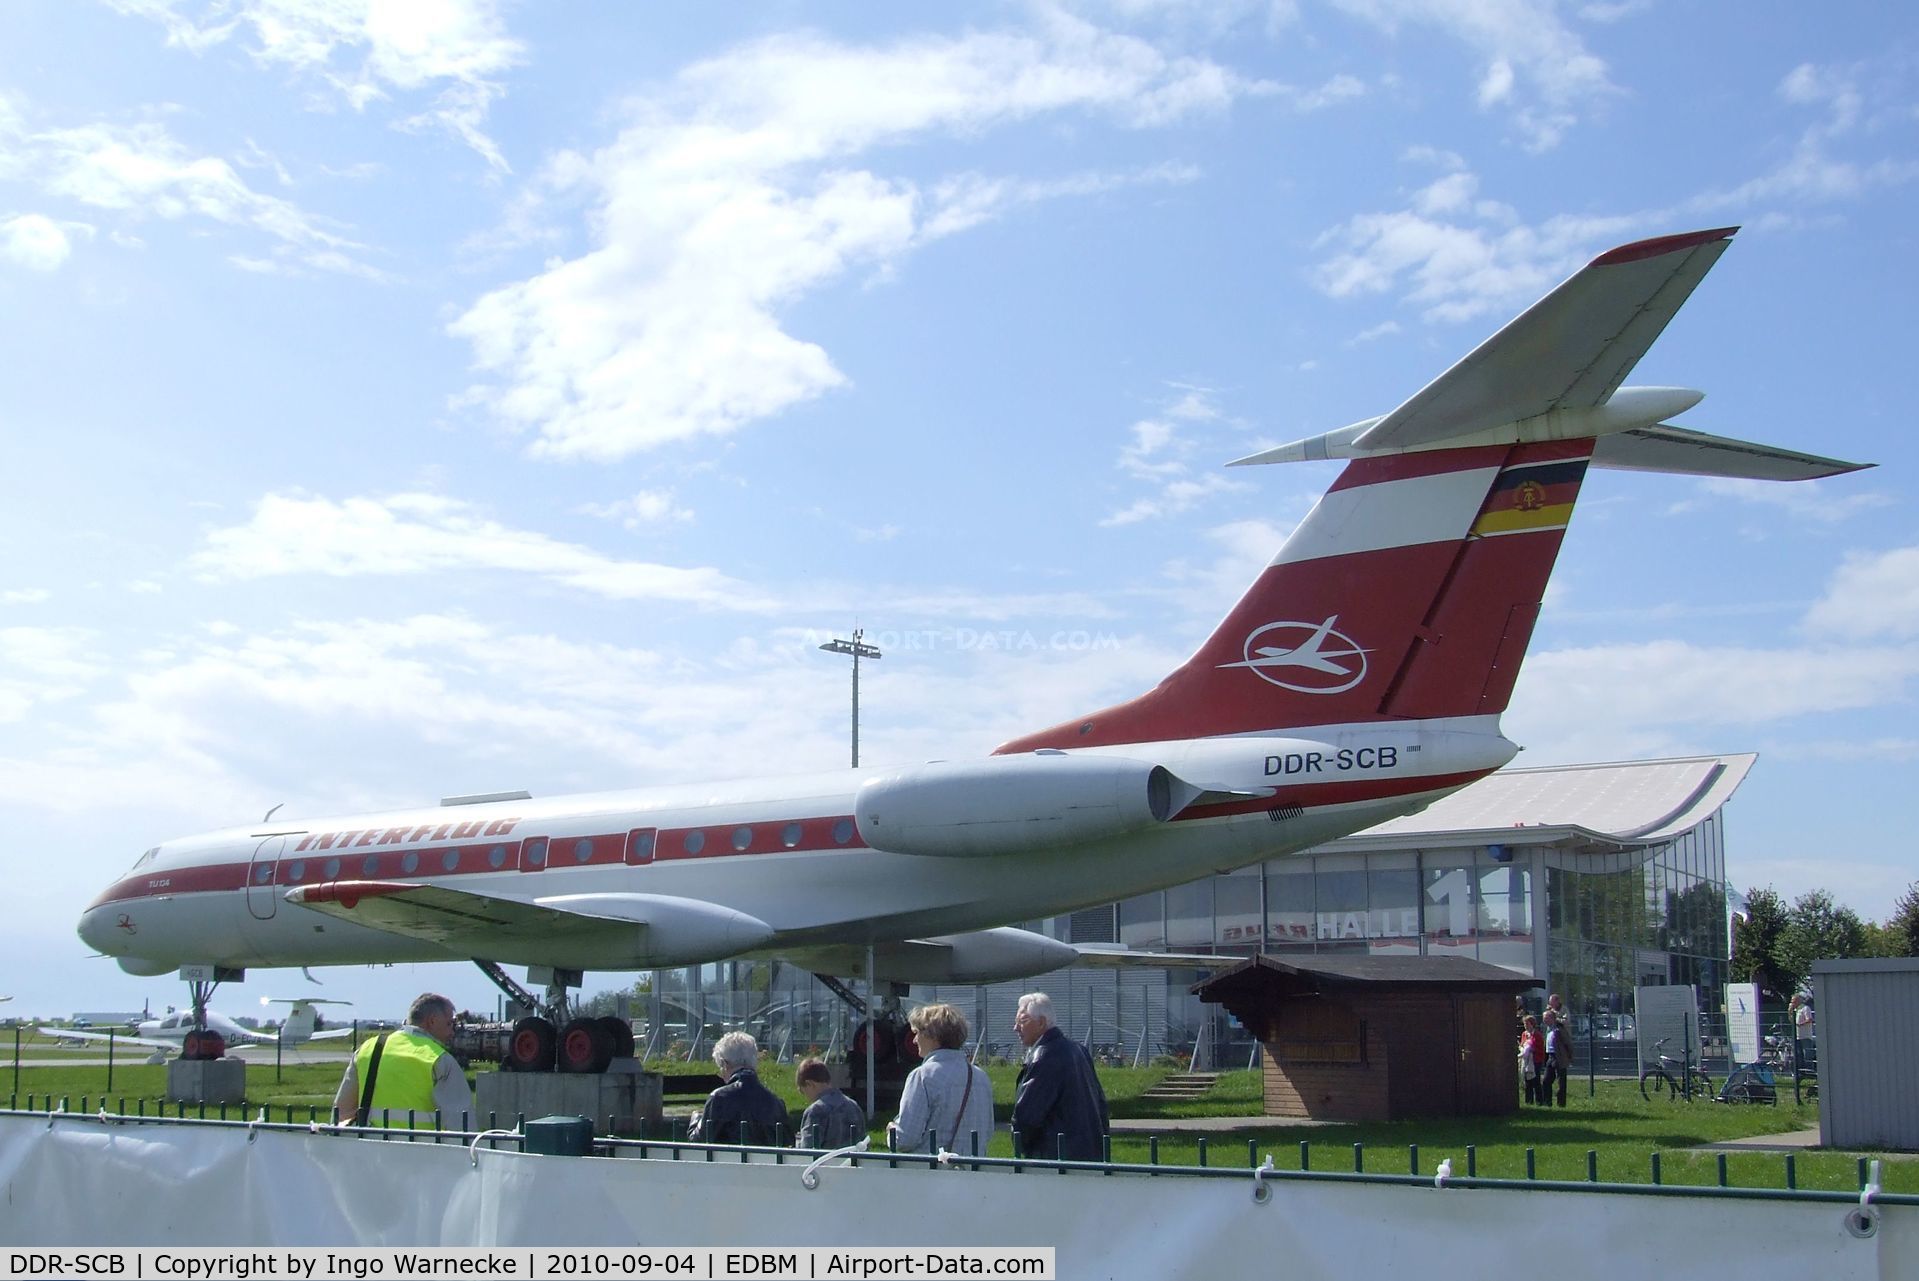 DDR-SCB, 1968 Tupolev Tu-134 C/N 8350503, Tupolev Tu-134 CRUSTY preserved at Magdeburg airfield